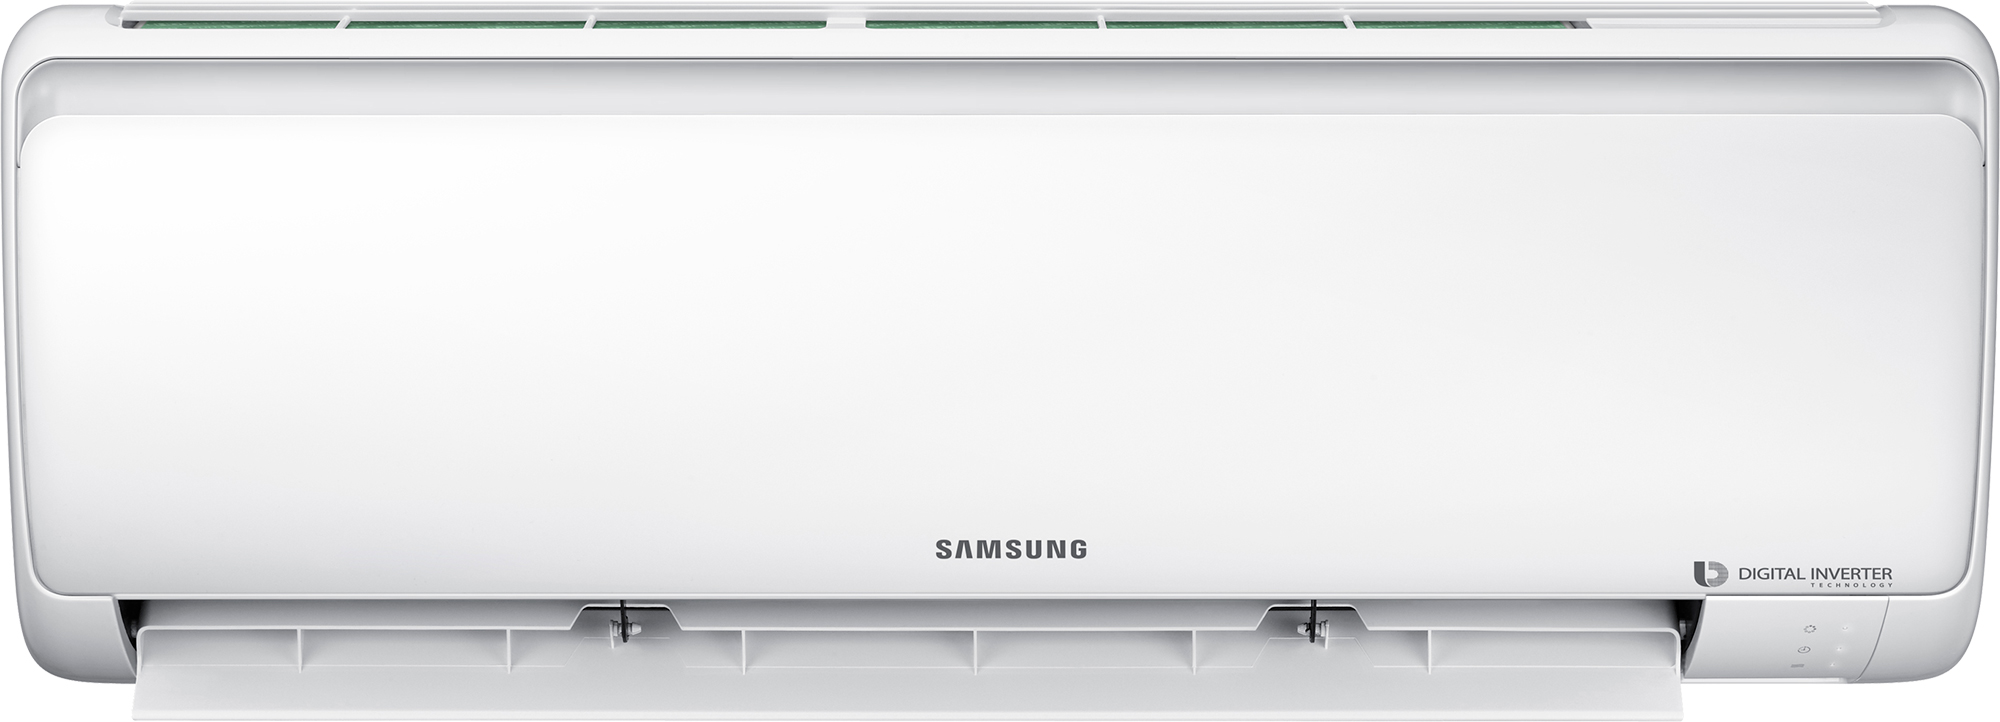 Кондиционер сплит-система Samsung AR12RSFPAWQNER / AR12RSFPAWQXER цена 0.00 грн - фотография 2